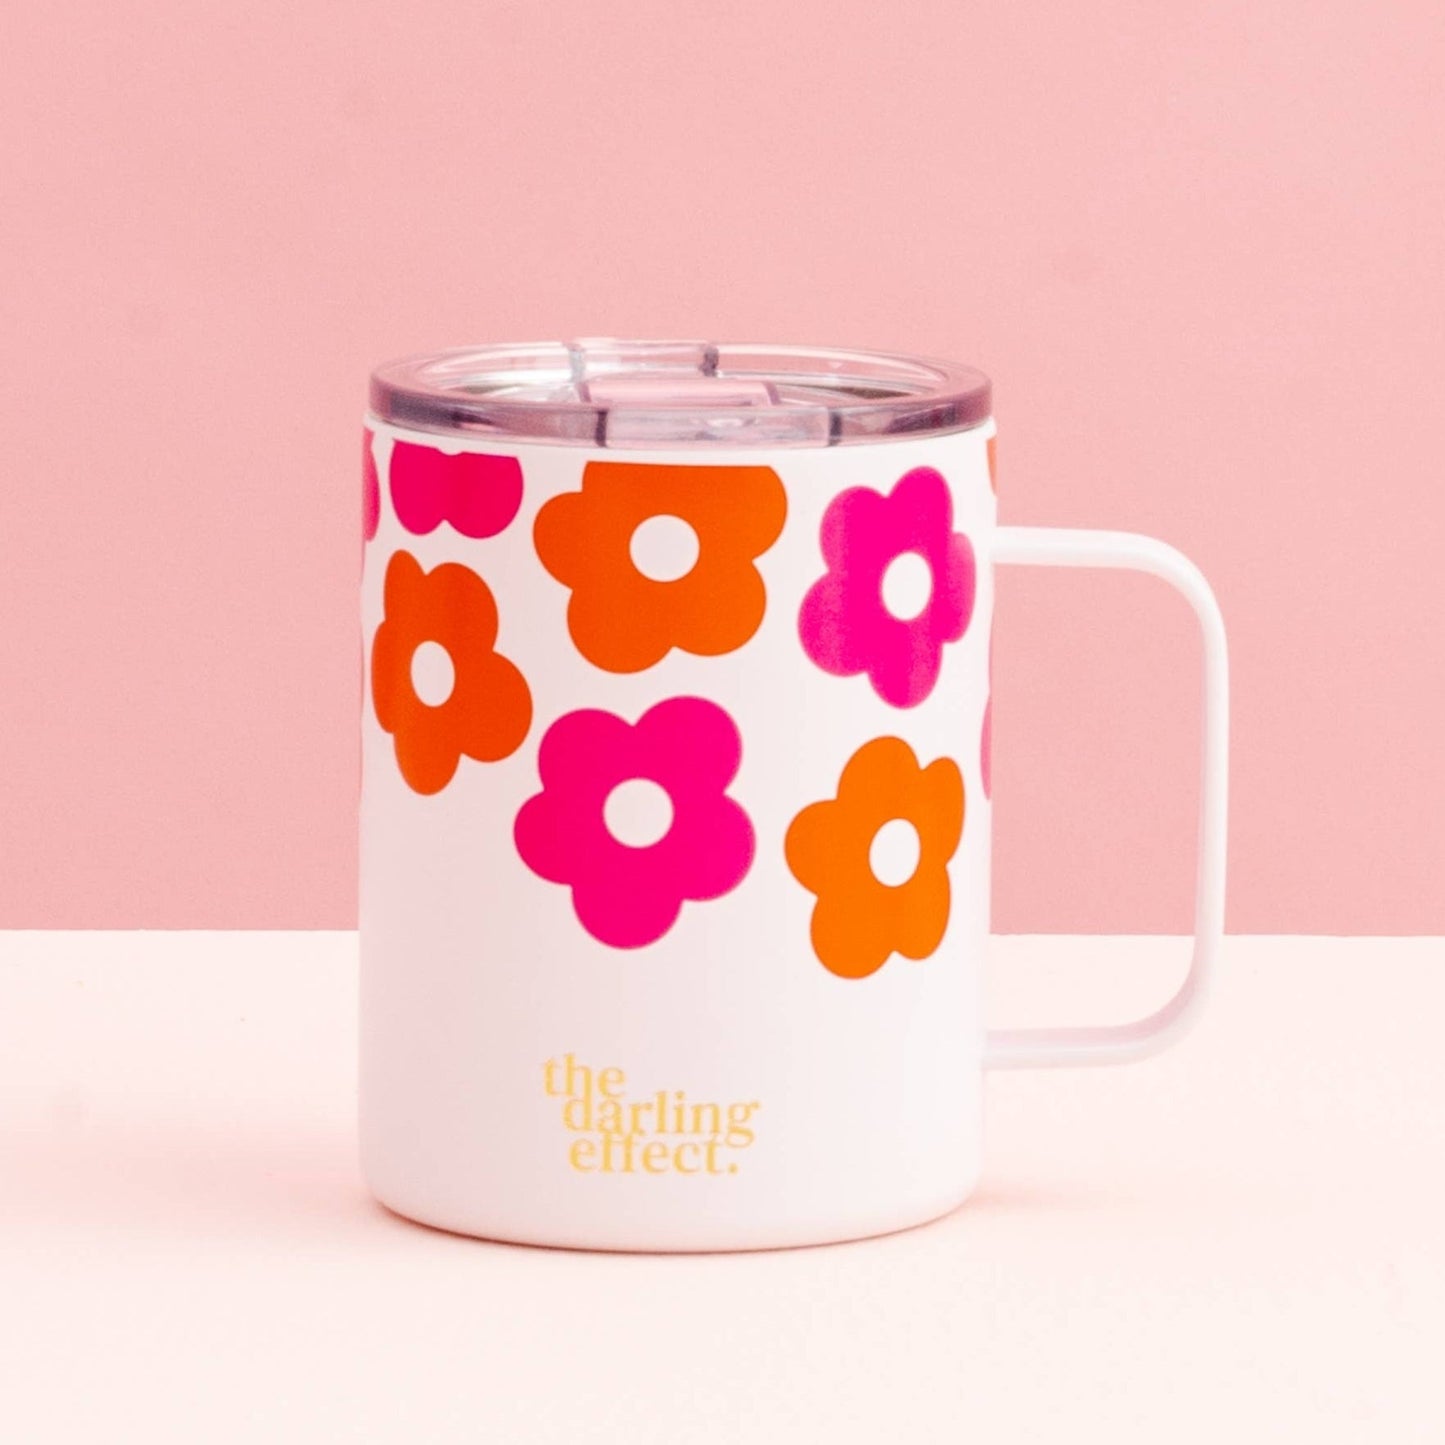 lovebug floral mug on a pink background.